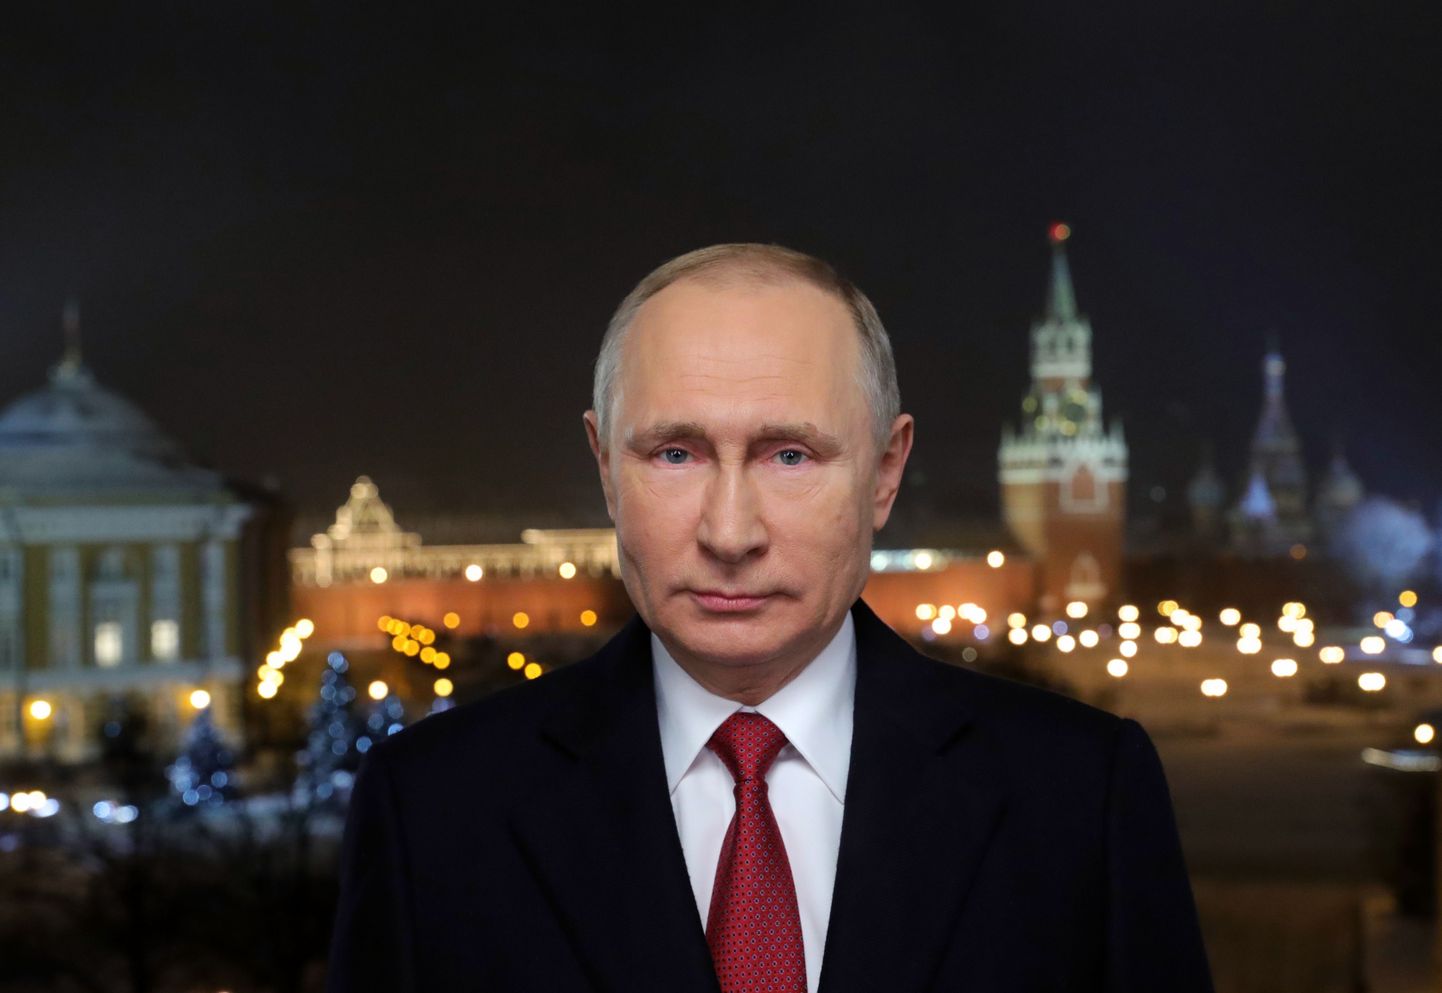 Venemaa presidendi Vladimir Putini telepöördumine 31. jaanuaril 2018. Foto: Mikhail KLIMENTYEV / AFP)